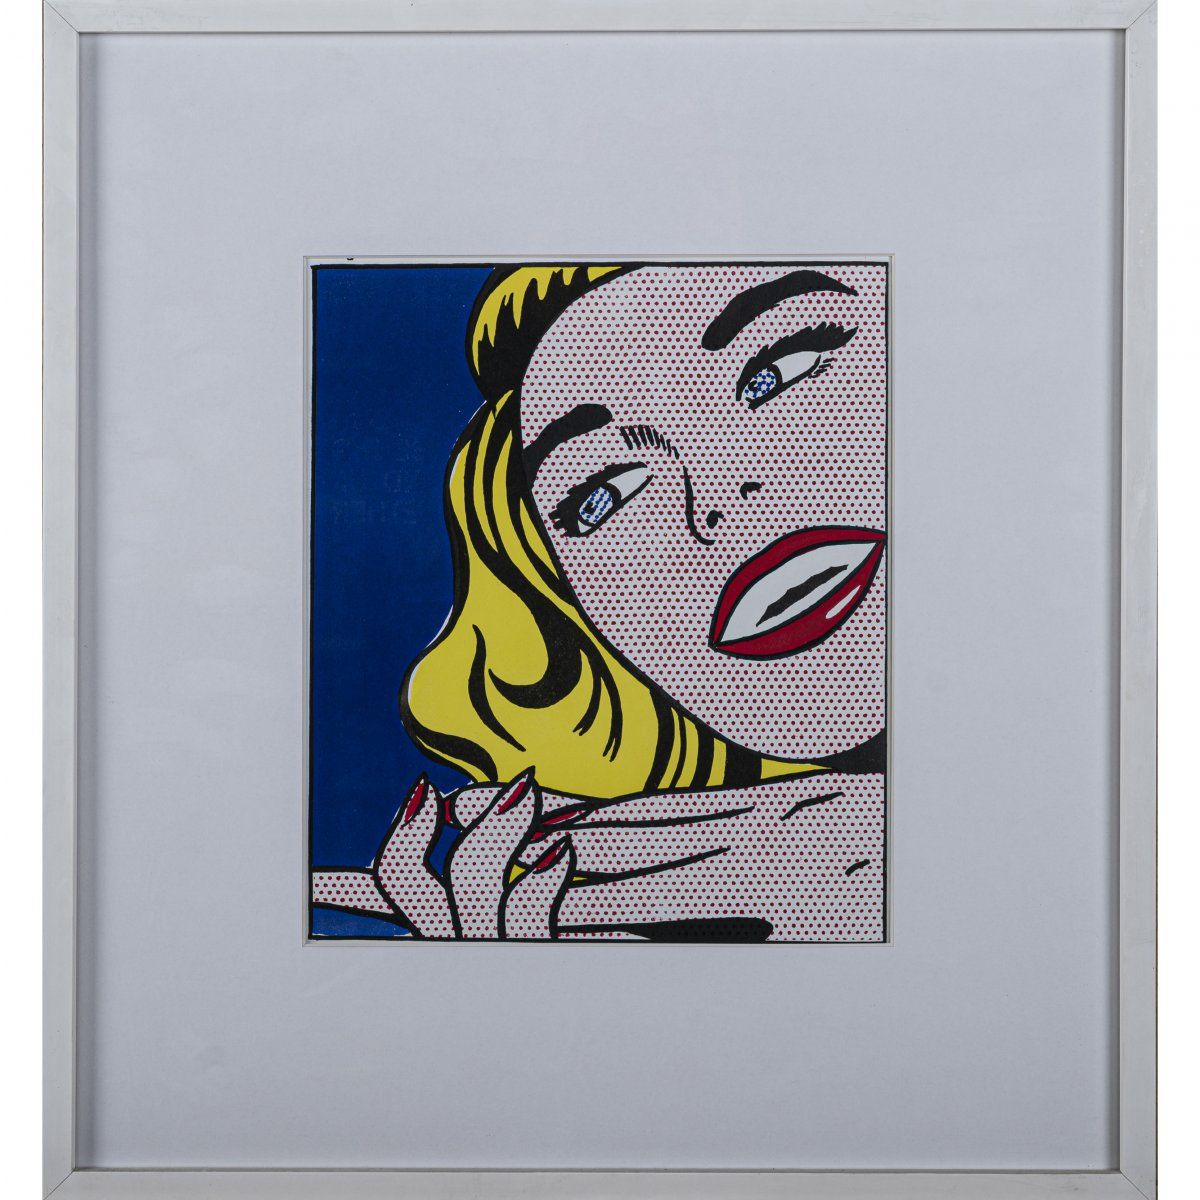 Null Roy Lichtenstein (1923 New York - 1997 ebenda), "Mädchen" aus "One Cent Lif&hellip;